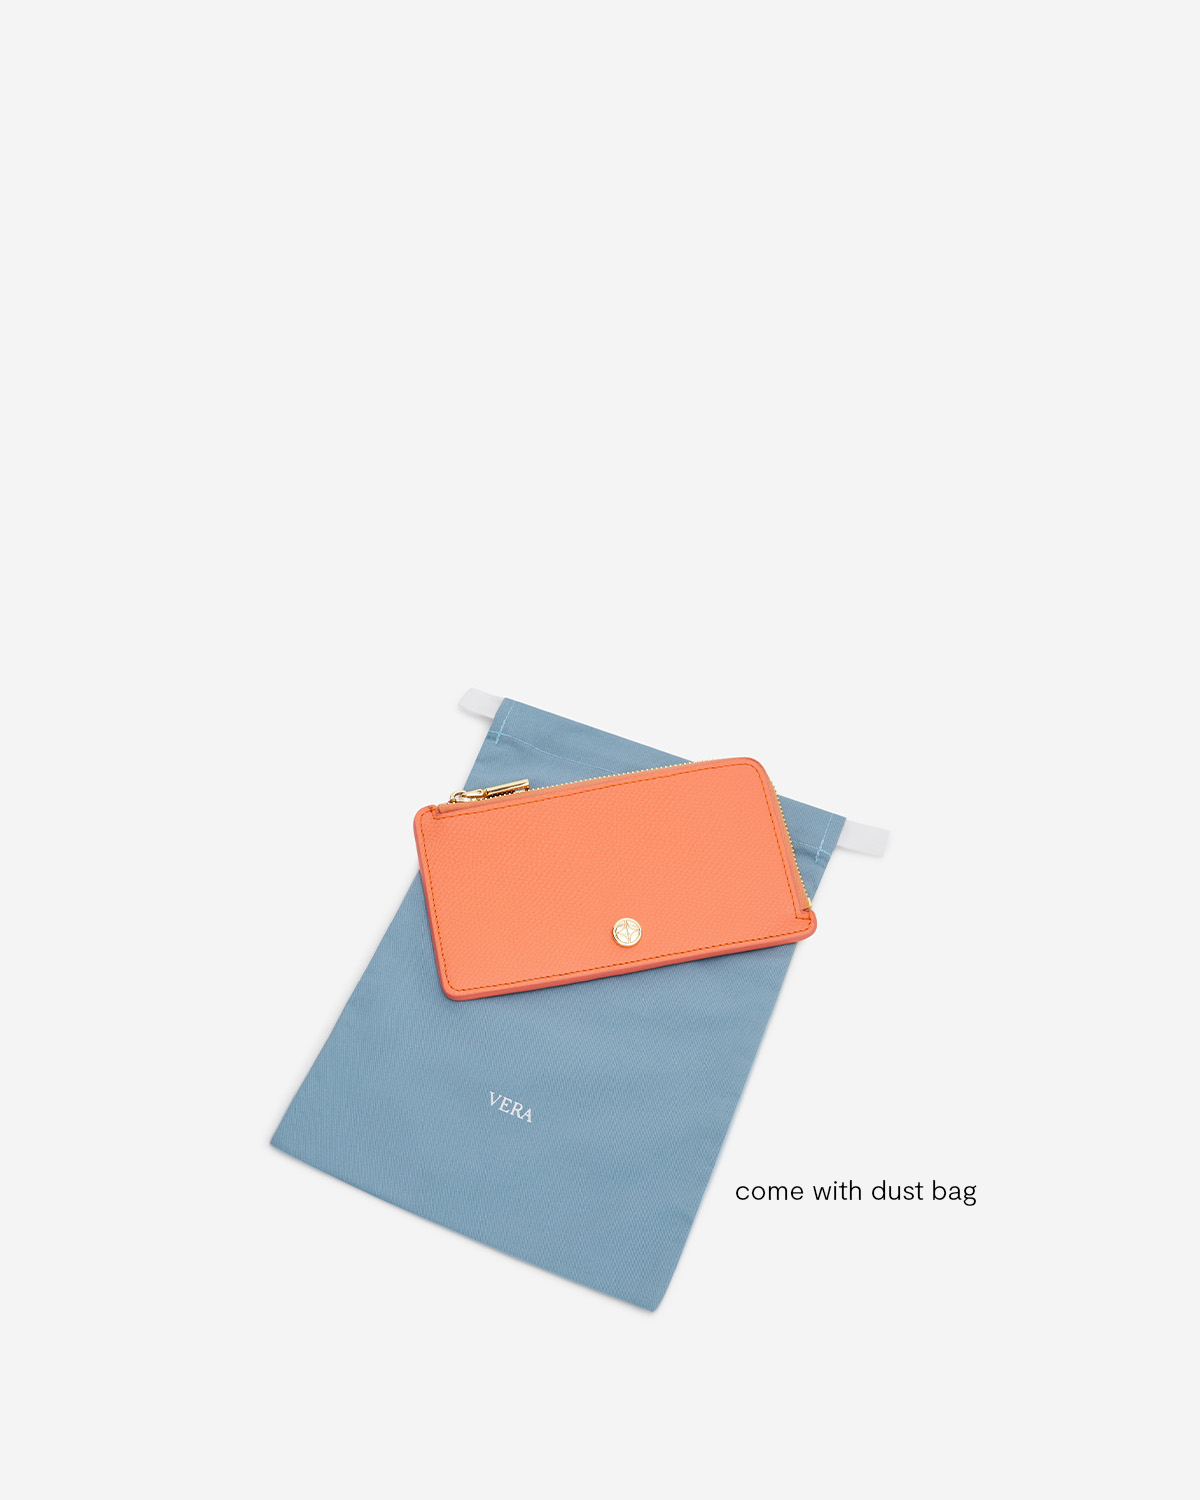 VERA Emily Long Card Holder in Joyful Orange กระเป๋าใส่บัตรหนังแท้ ทรงยาว พร้อมช่องซิบ สีส้ม